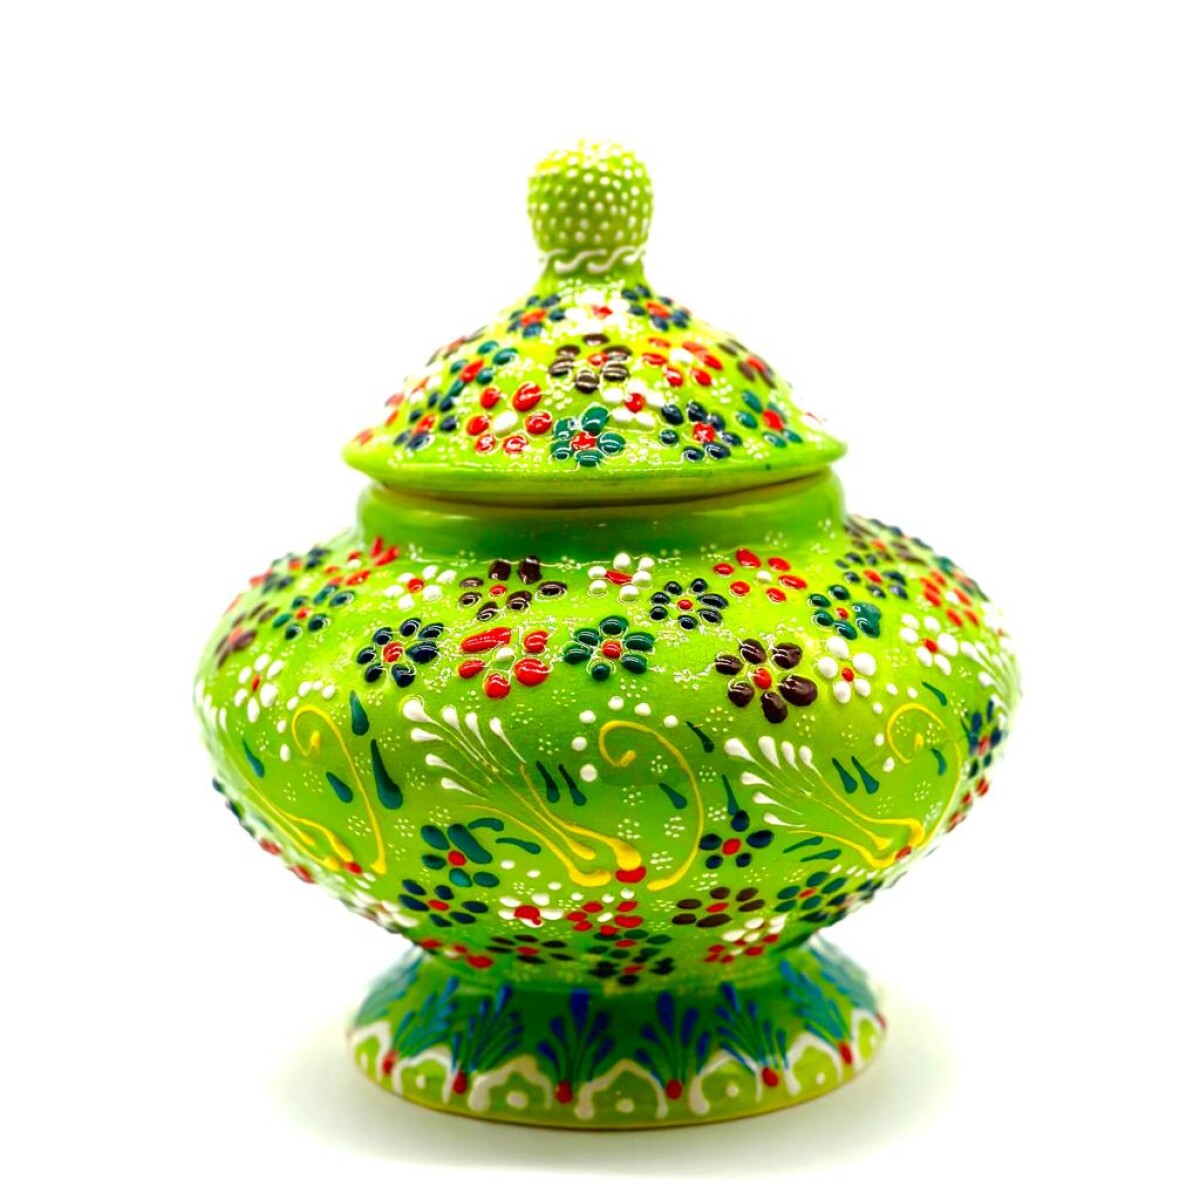 Bombonera de cerámica pintada - Verde 